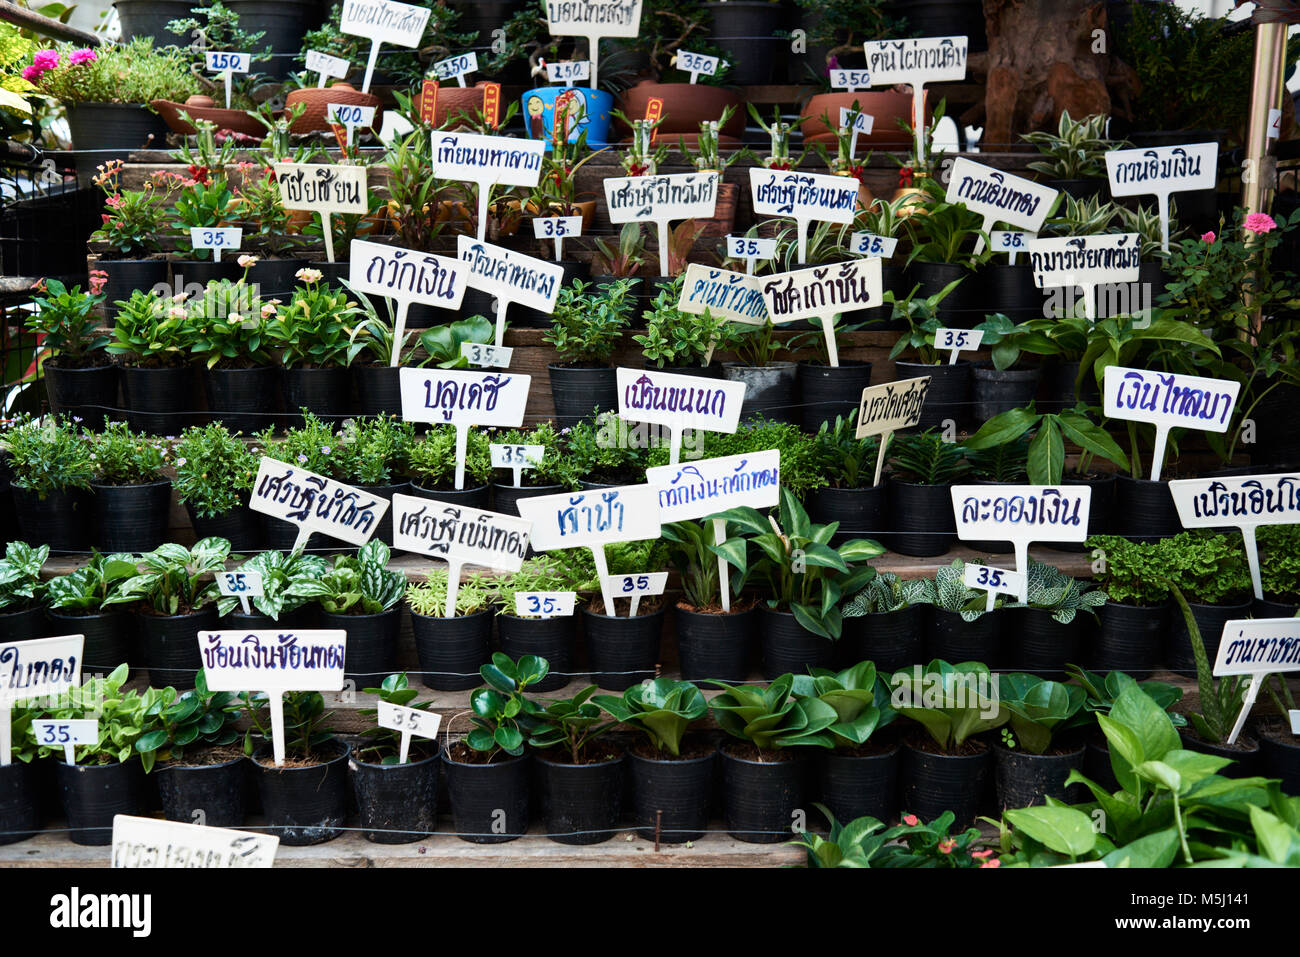 Il giardinaggio street stand con molte diverse piante verdi e i relativi nomi scritti a mano in thai, Bangkok in Thailandia. Foto Stock